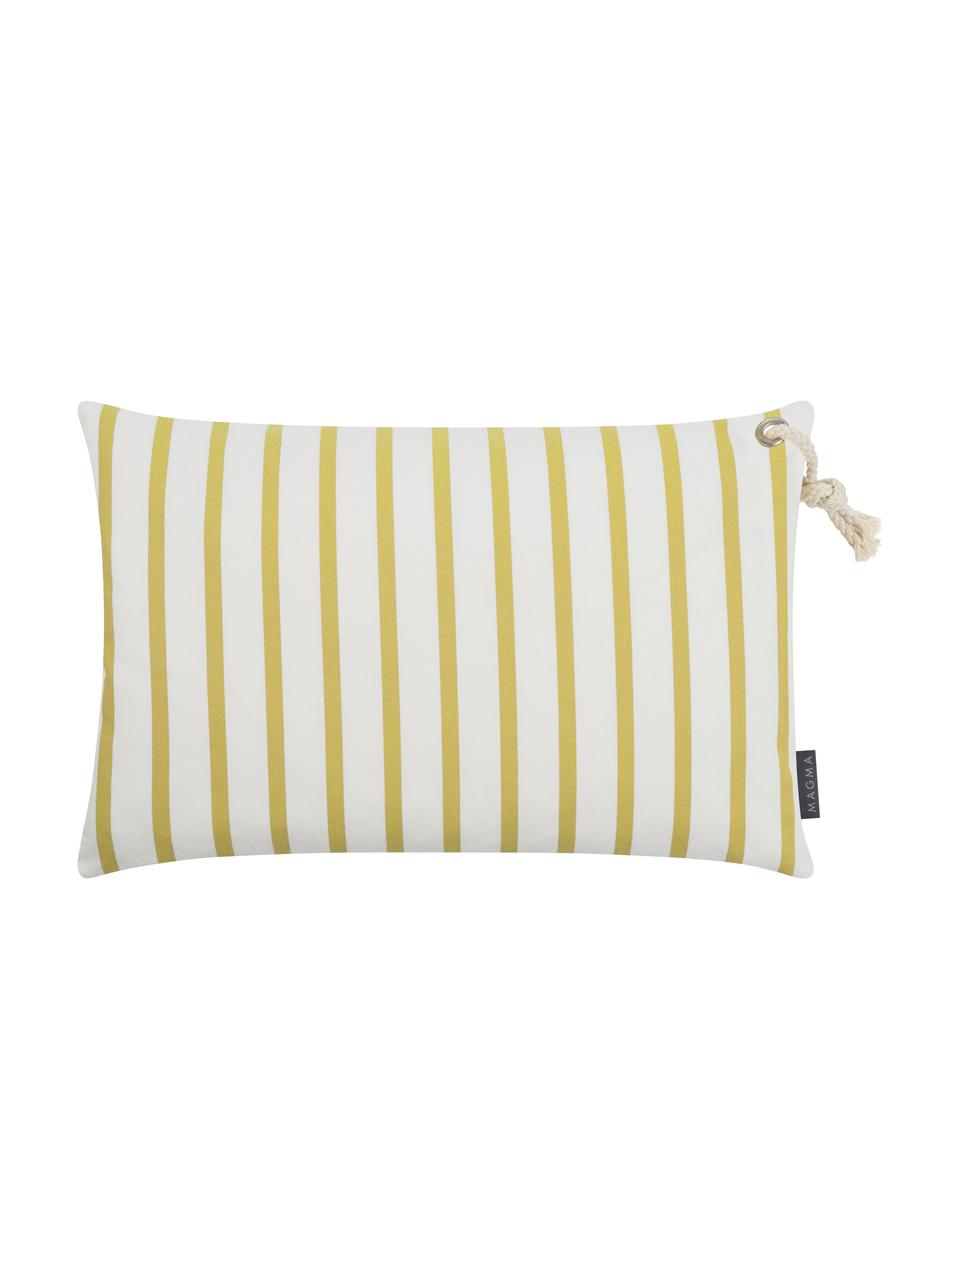 Poszewka na poduszkę Malta, 100% poliakryl, Żółty, biały, S 40 x D 60 cm